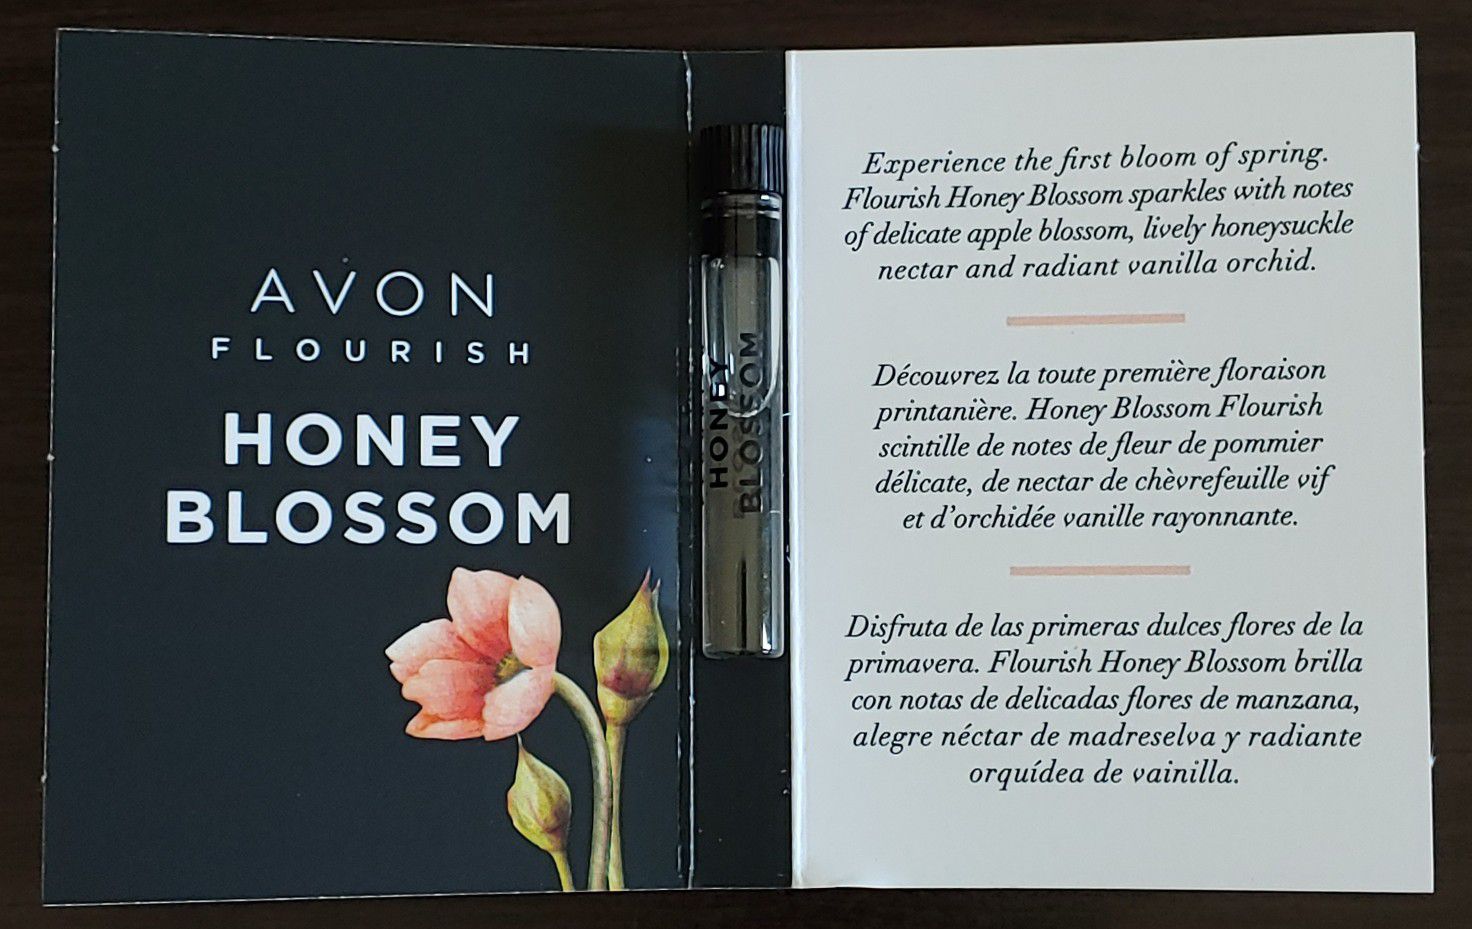 AVON Flourish: Honey Blossom Eau de Parfume